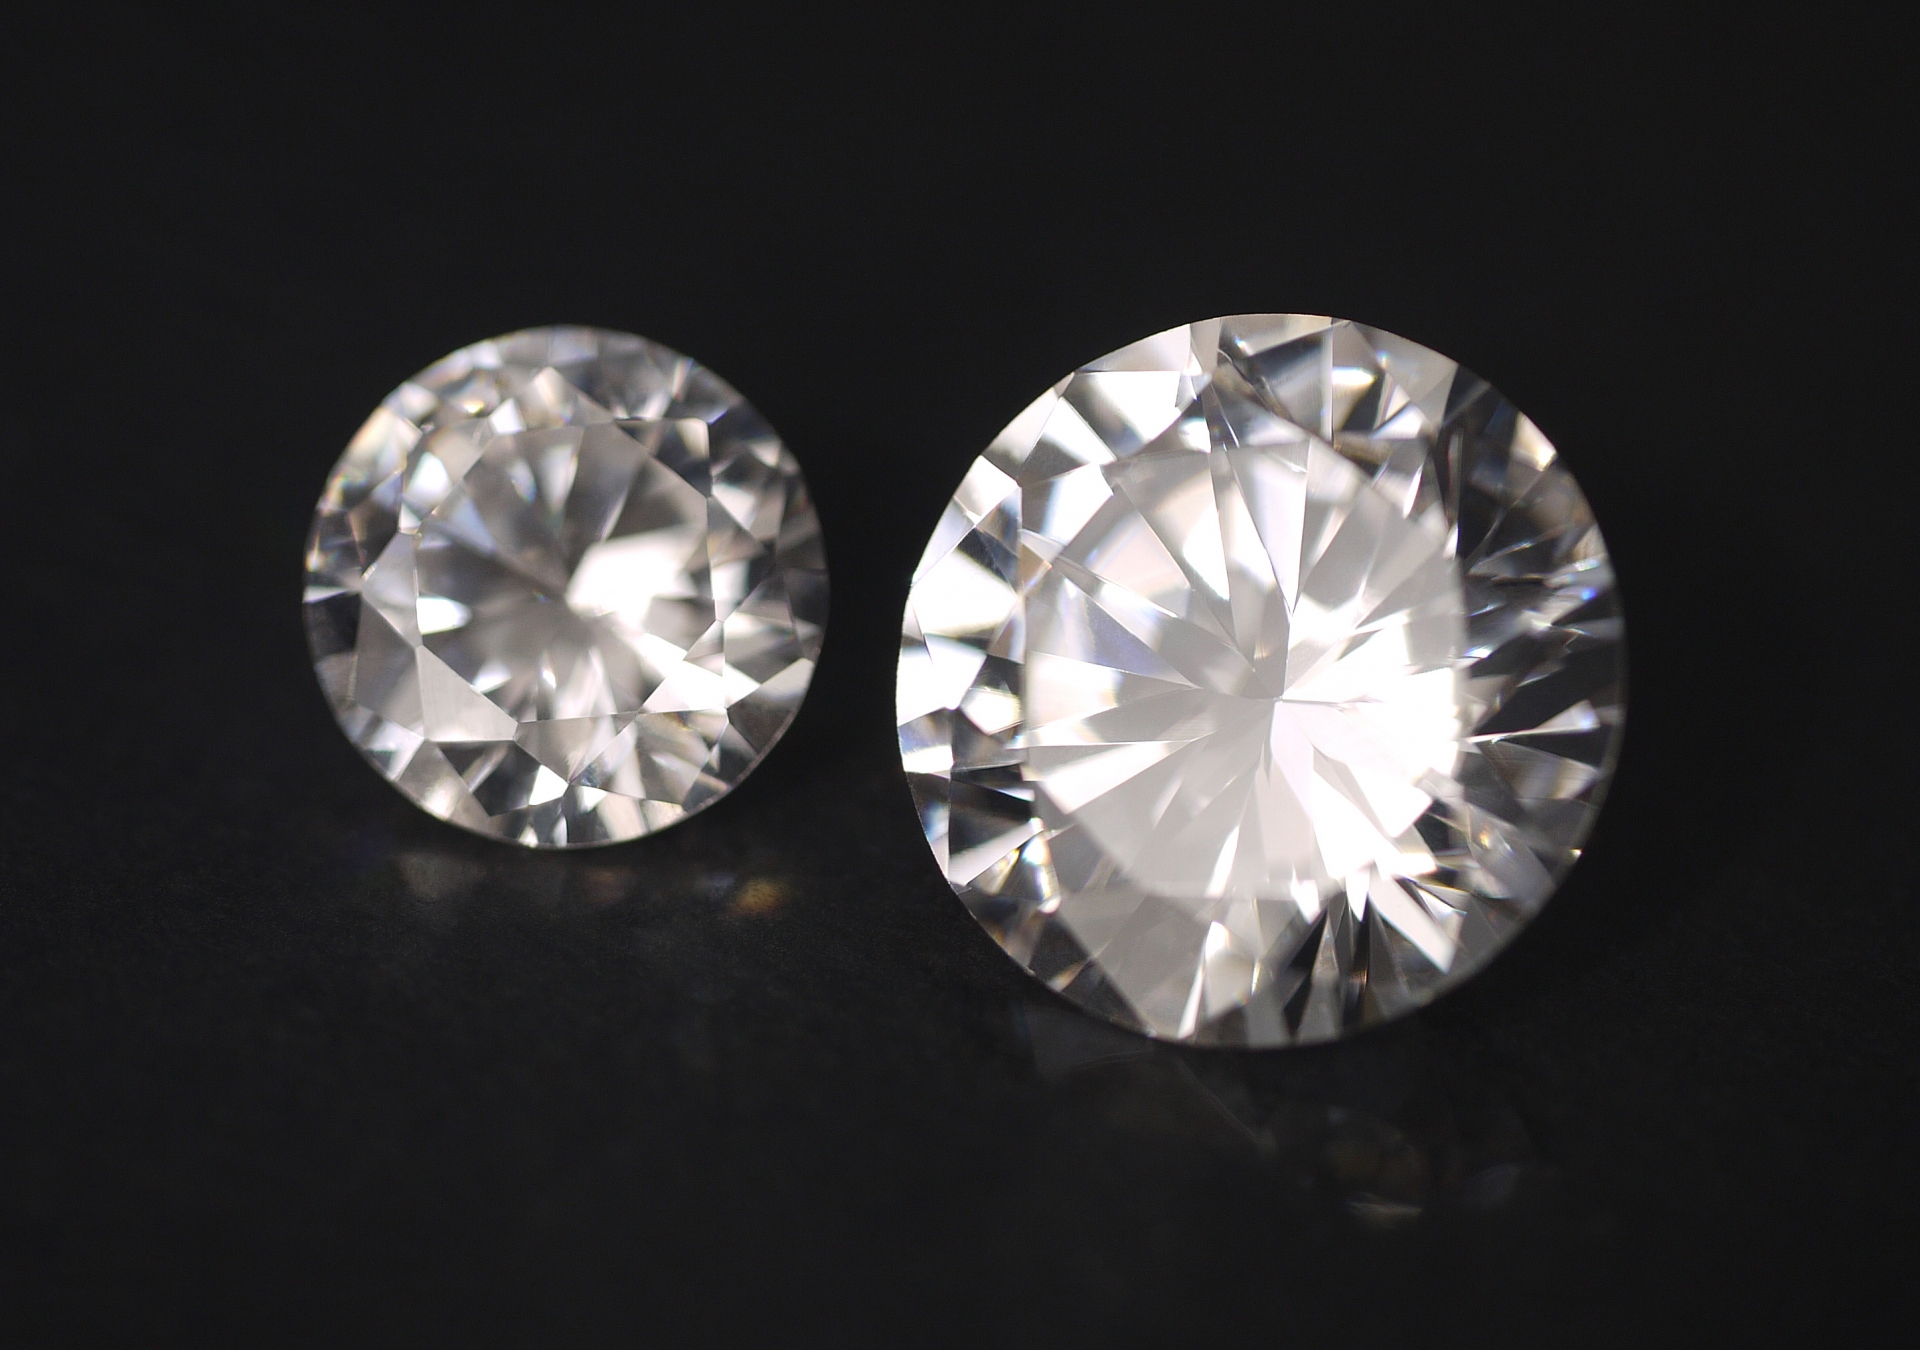 ダイヤモンド買取の請求書の見方について詳しく解説